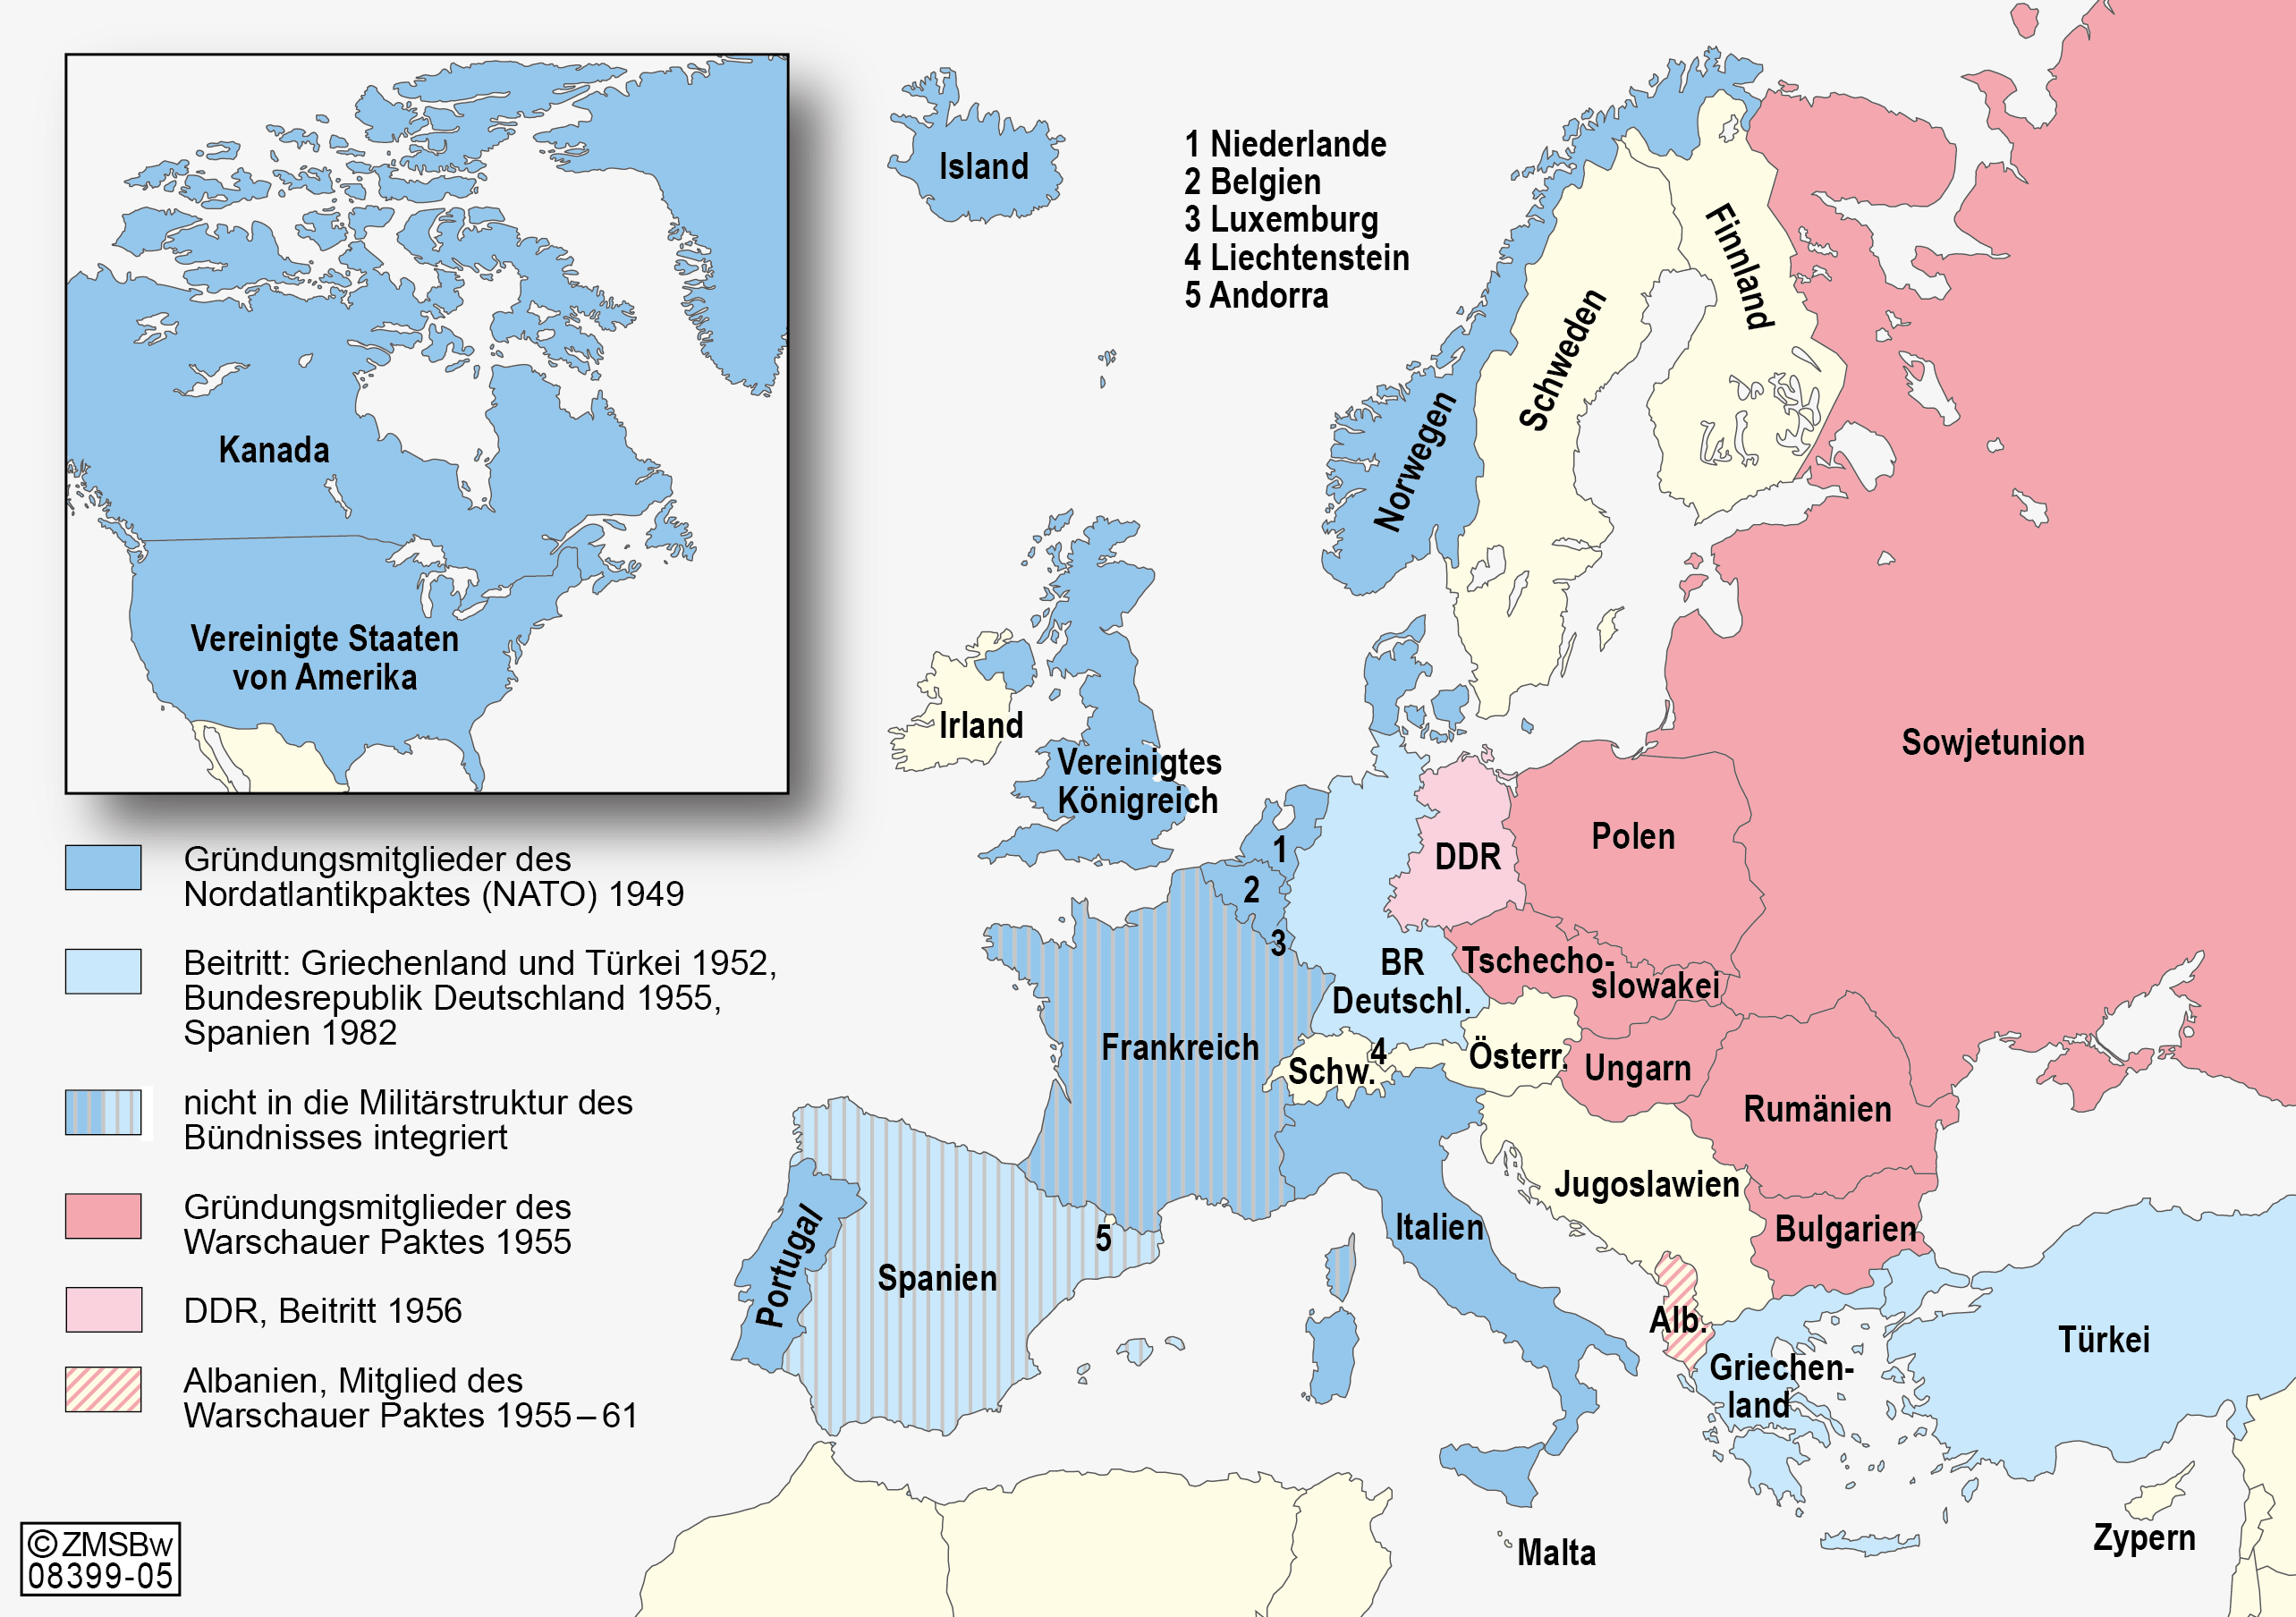 Karte der Mitgliedsländer der NATO und des Warschauer Pakts am Ende des Kalten Krieges